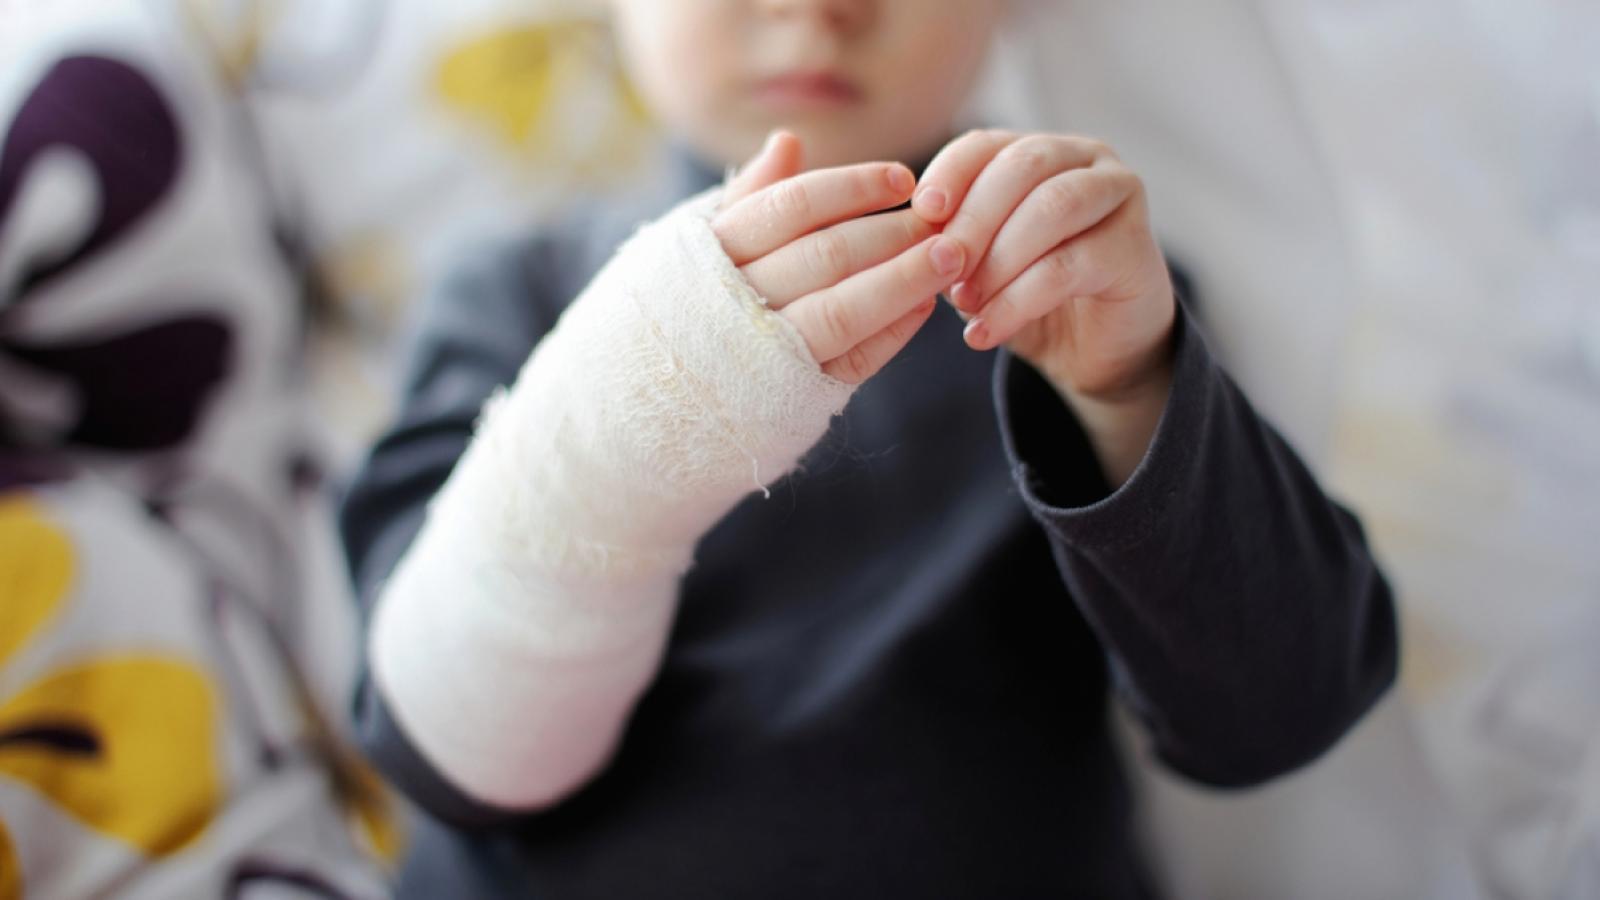 Полуторагодовалый ребенок получил серьезную травму в частном детсаду